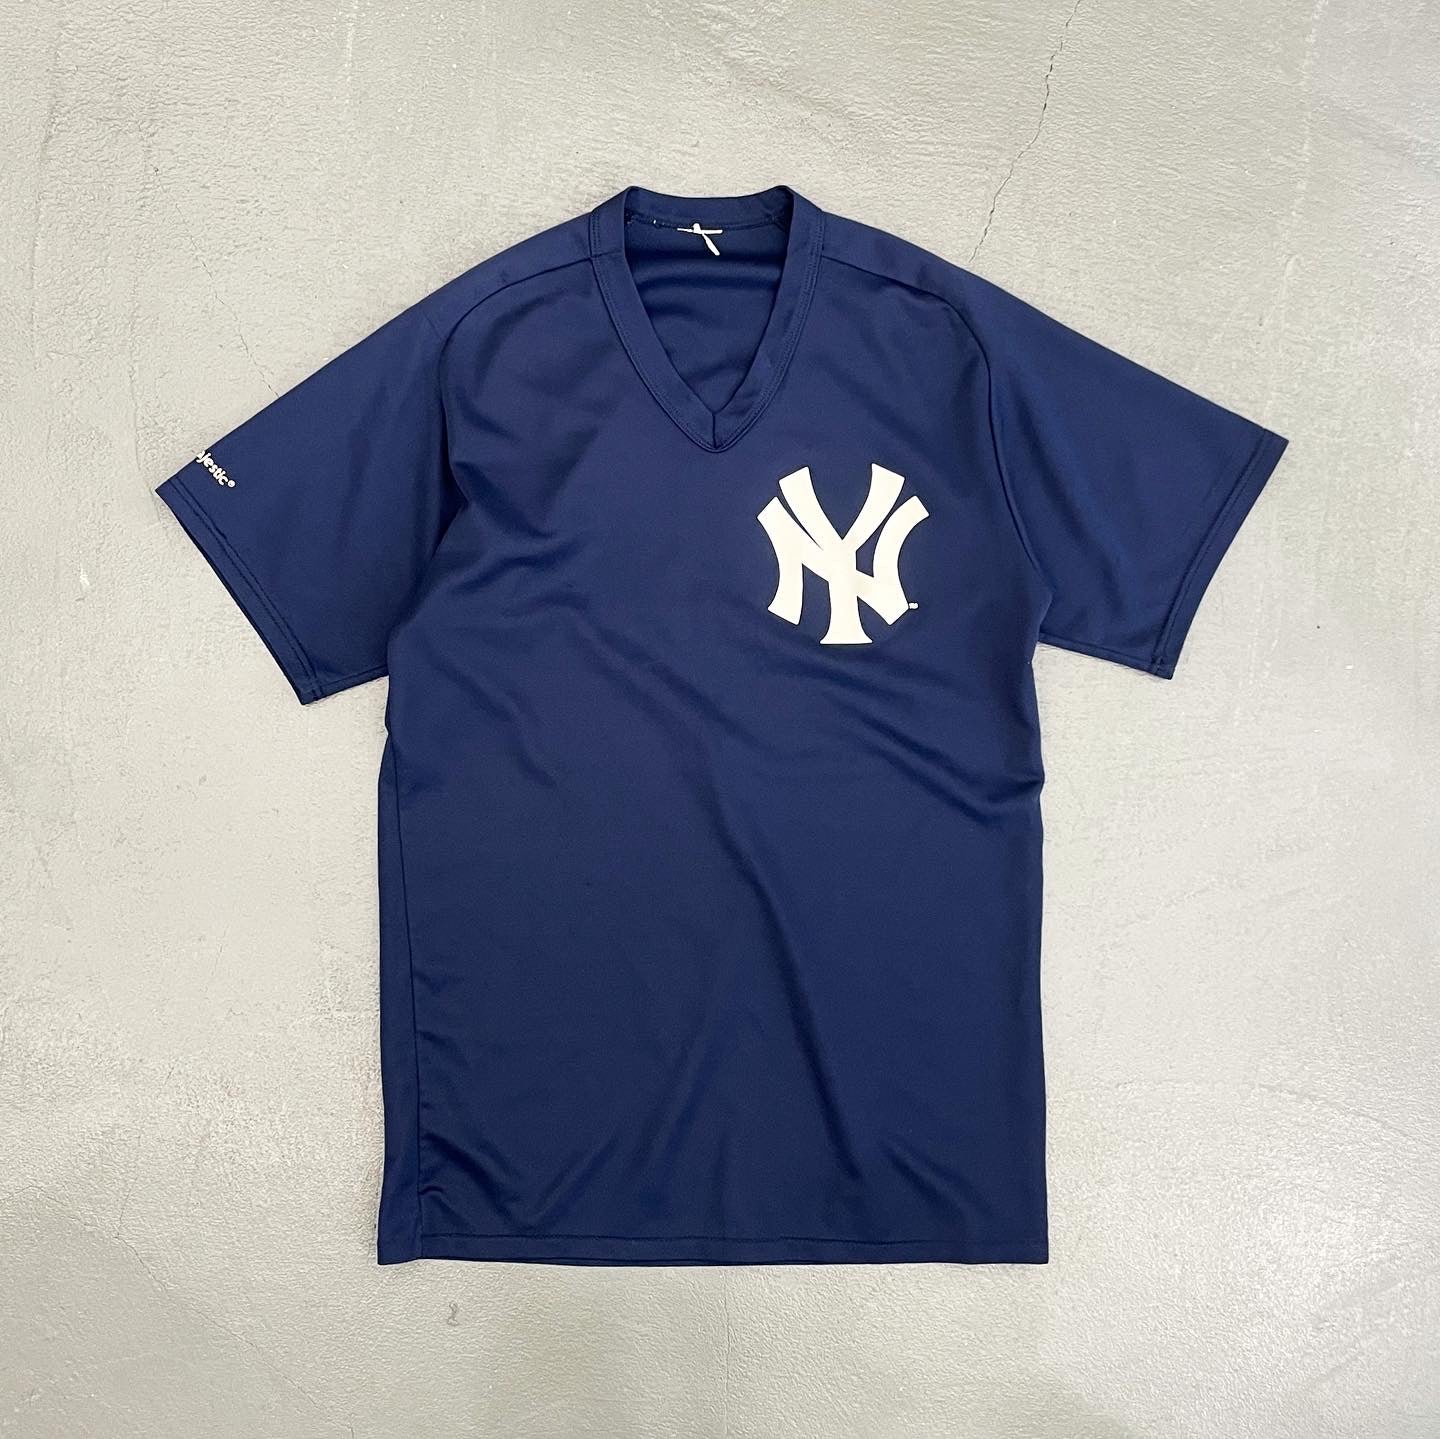 New Yoek Yankees Jersey by Majestic